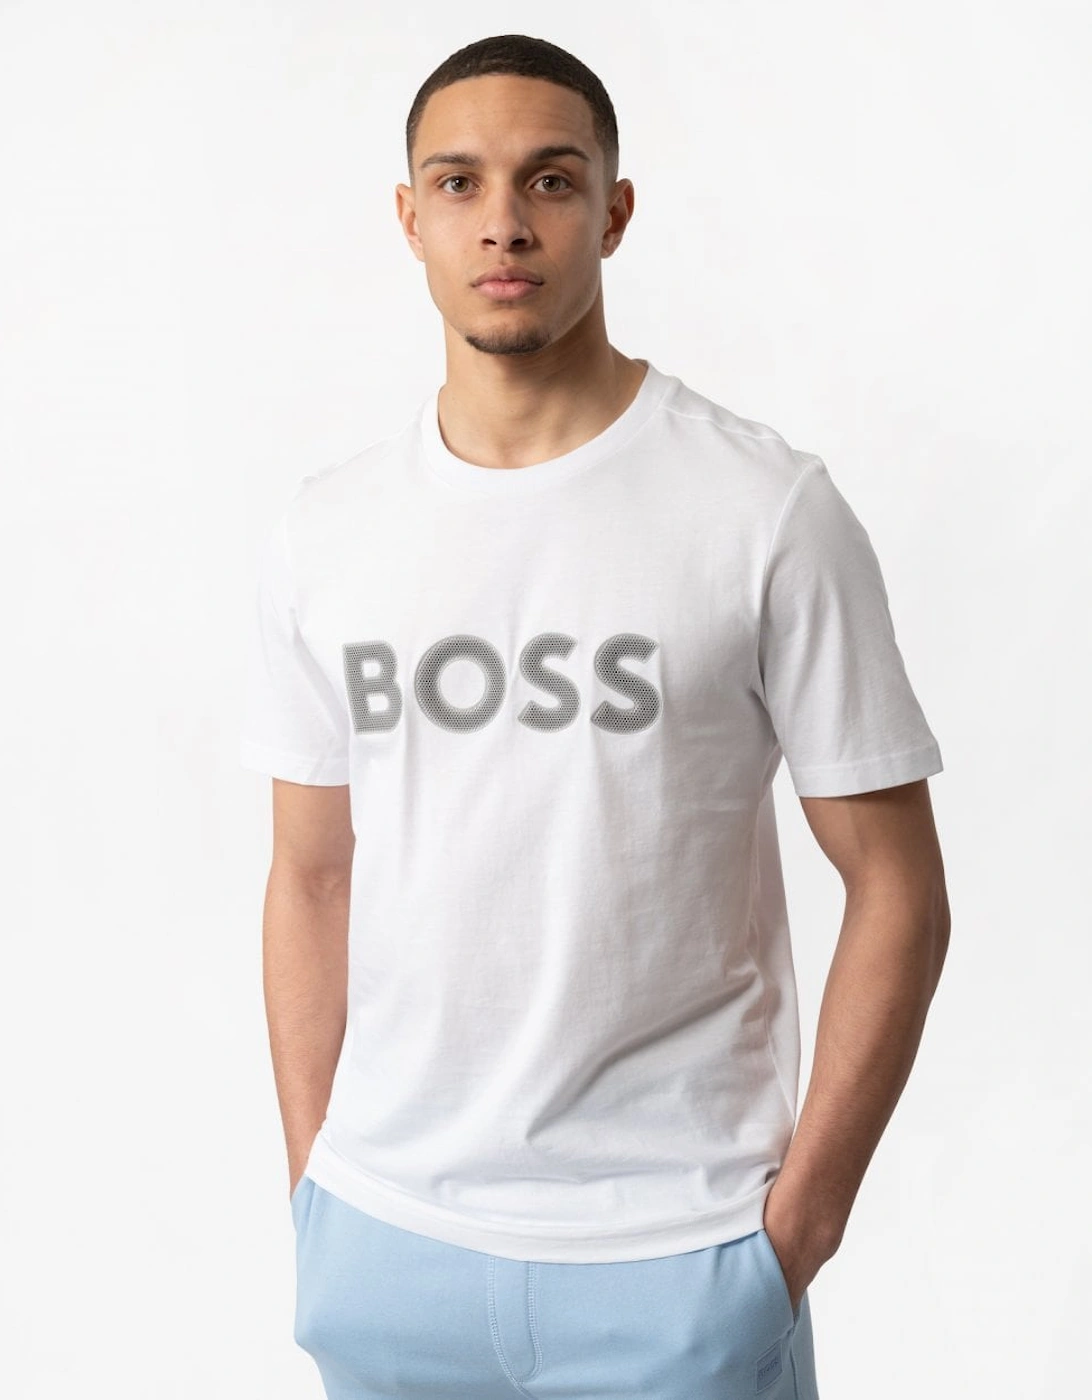 BOSS Green Tee 1 Mens Cotton Jersey Regular Fit T-Shirt with Mesh Logo, 5 of 4